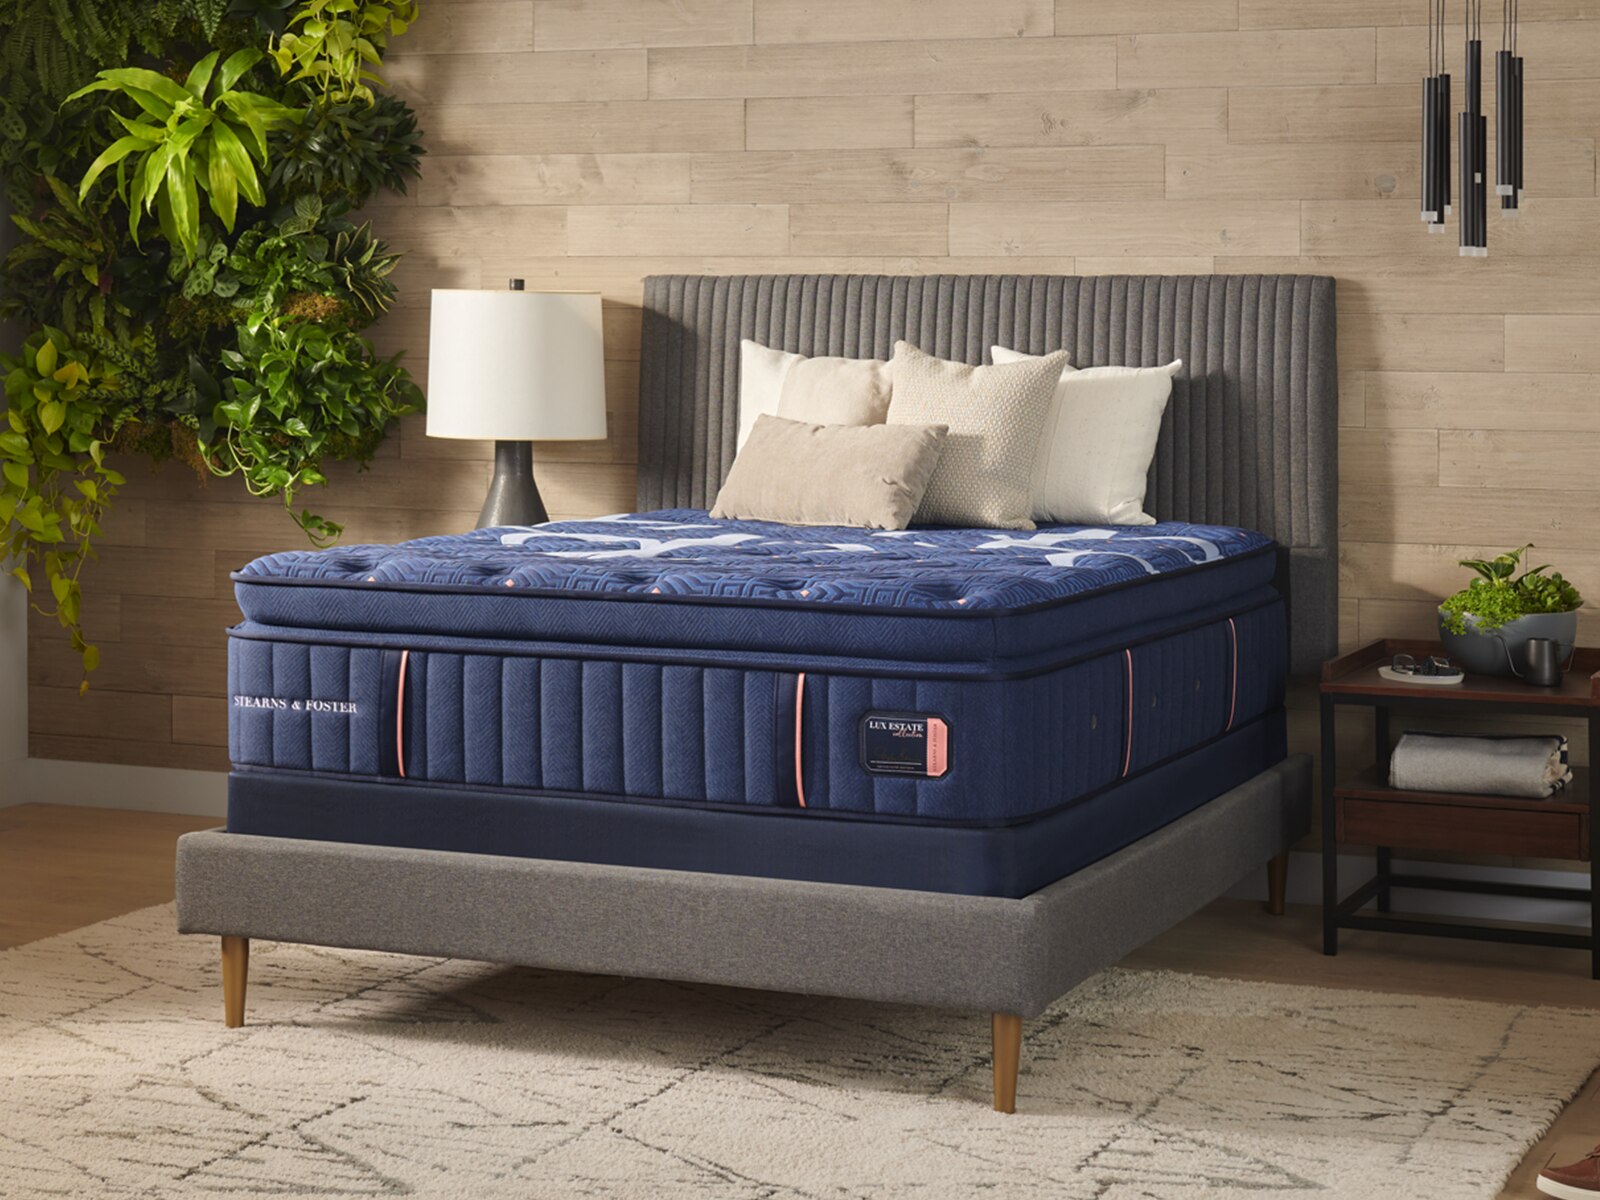 hyatt grand bed ii euro pillow top mattress